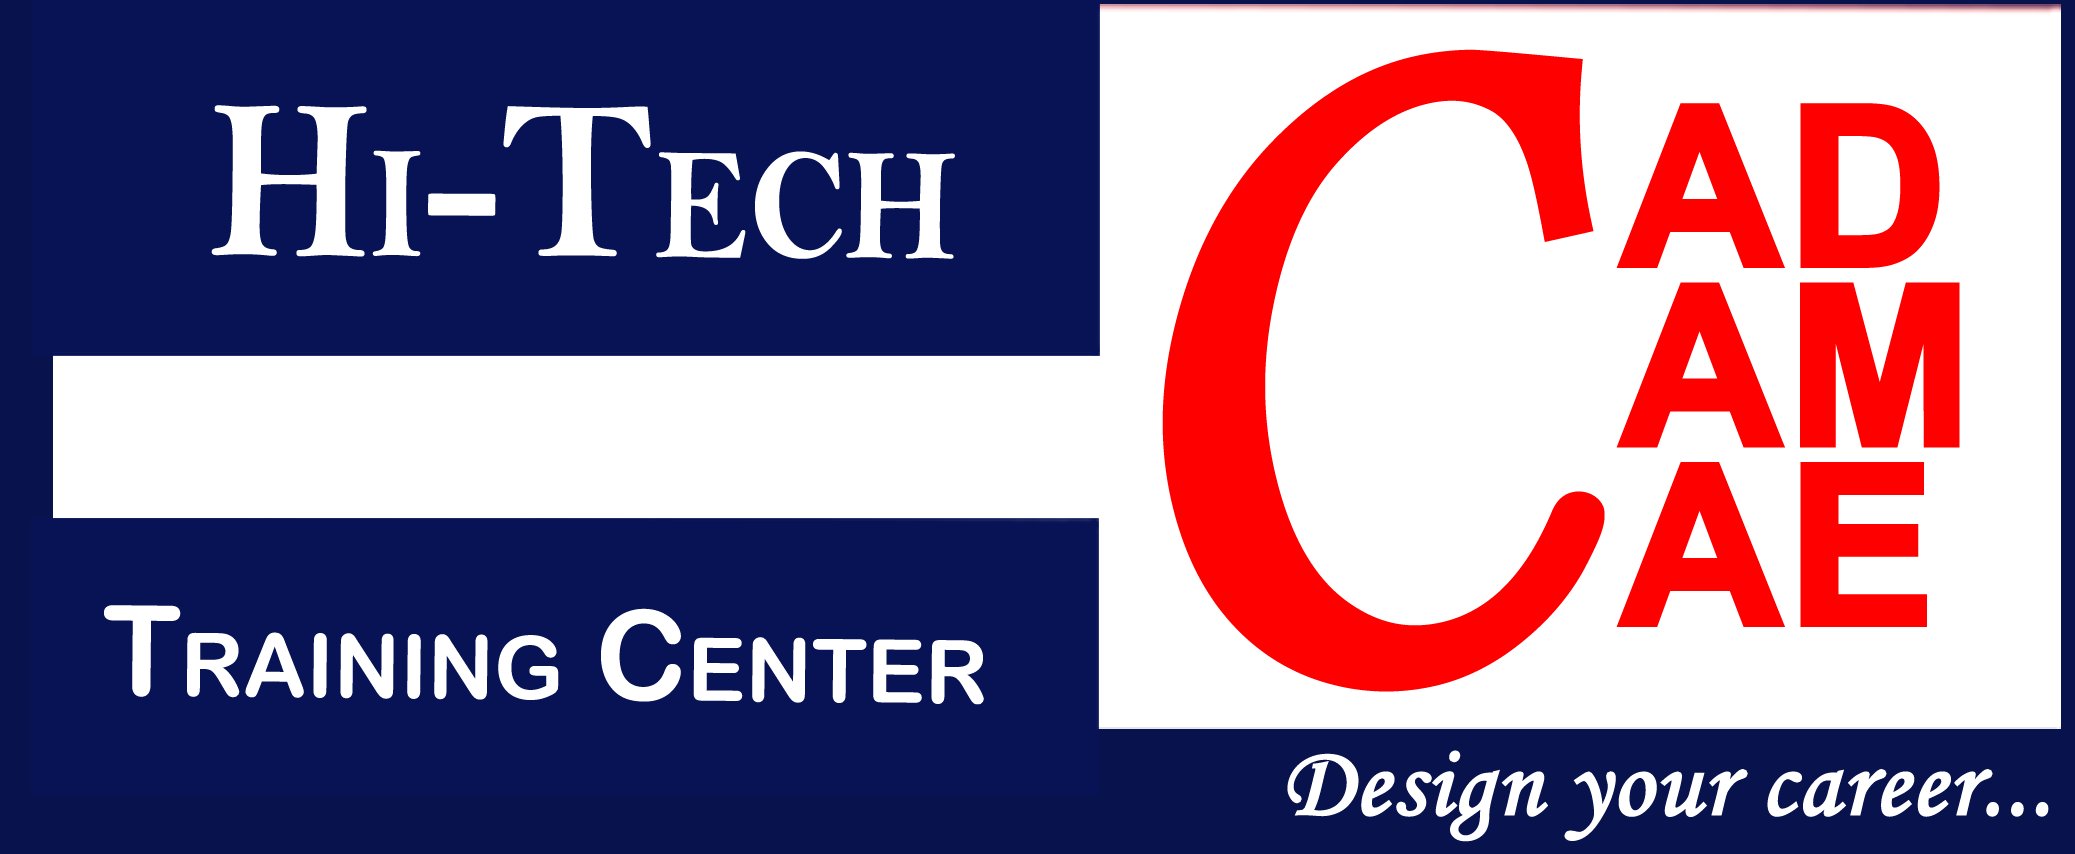 Hi-Tech CAD CAM CAE Training Centre Logo